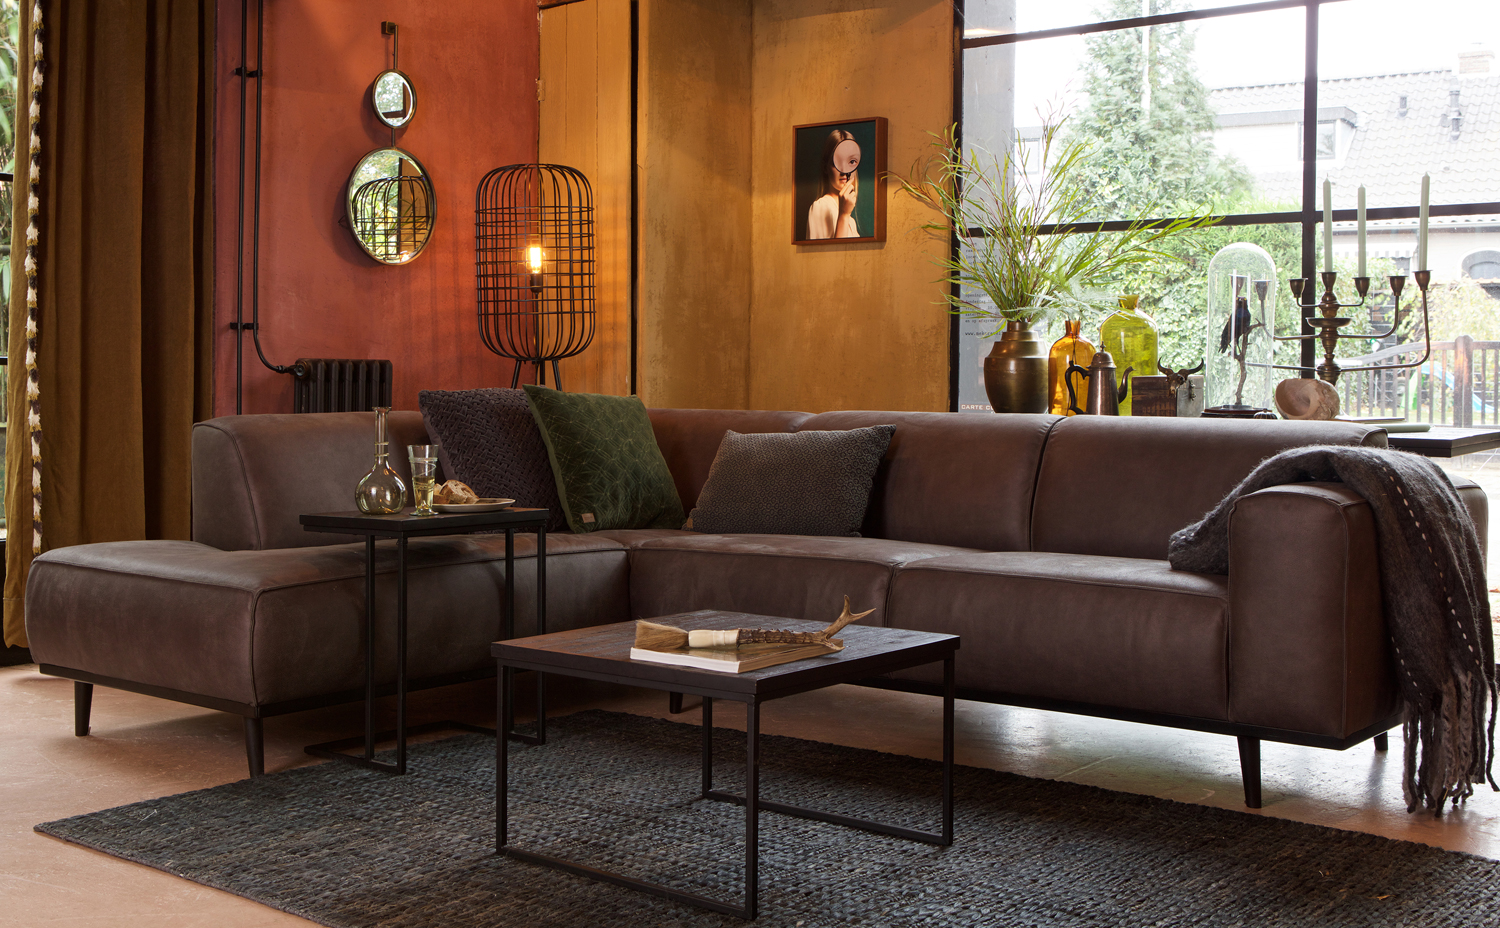 bepure Couch STATEMENT Ecksofa großer Eco Möbel Maison ESTO Online-Shop Ihr Eckgarnitur | links Longchair Leder Sofa Ledercouch grau